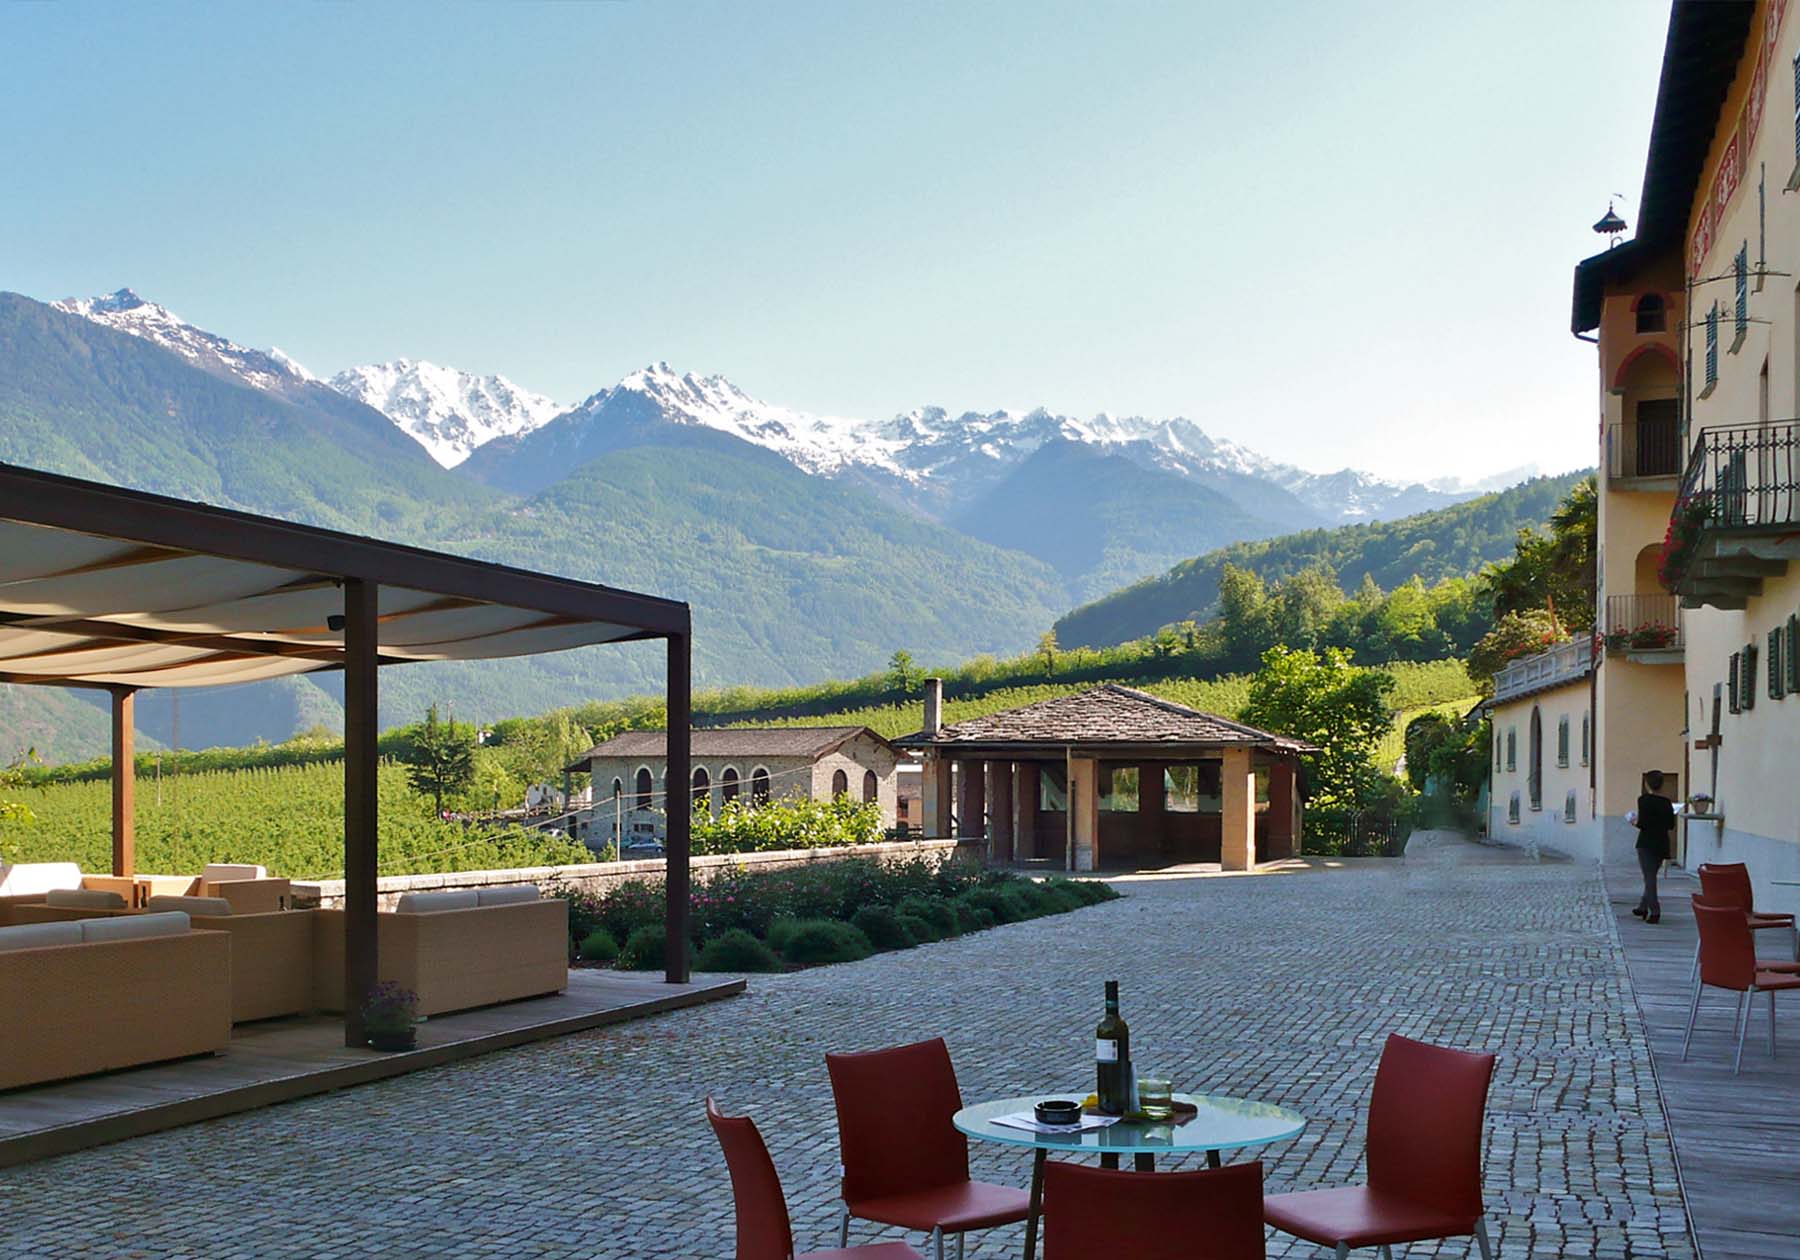 External view of the La Gatta estate in Valtellina